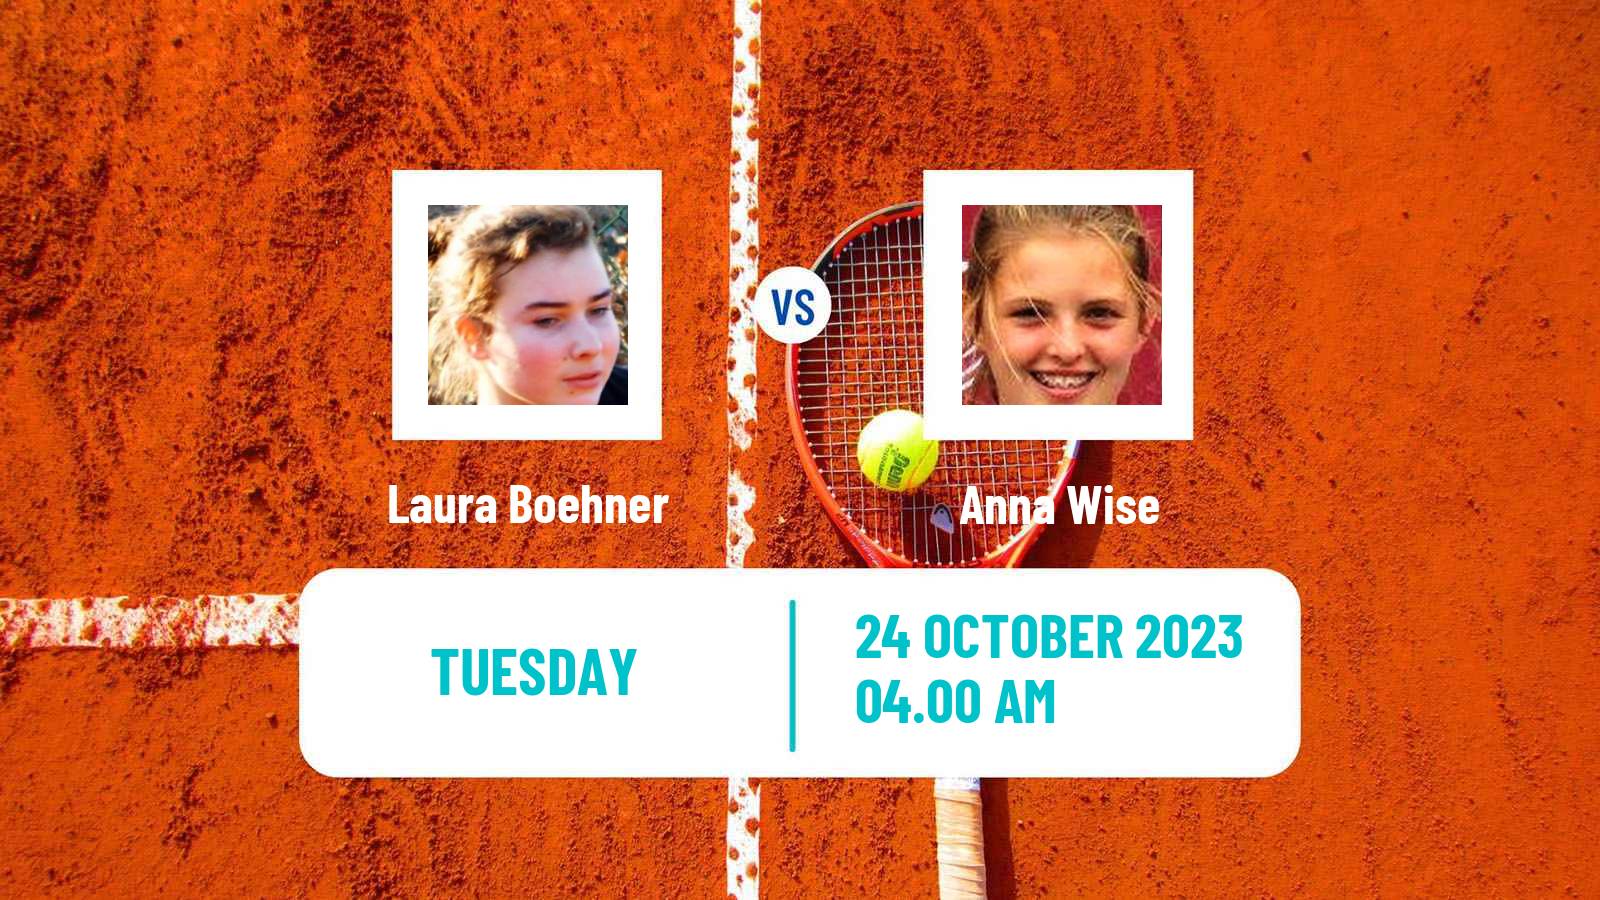 Tennis ITF W15 Villena Women Laura Boehner - Anna Wise